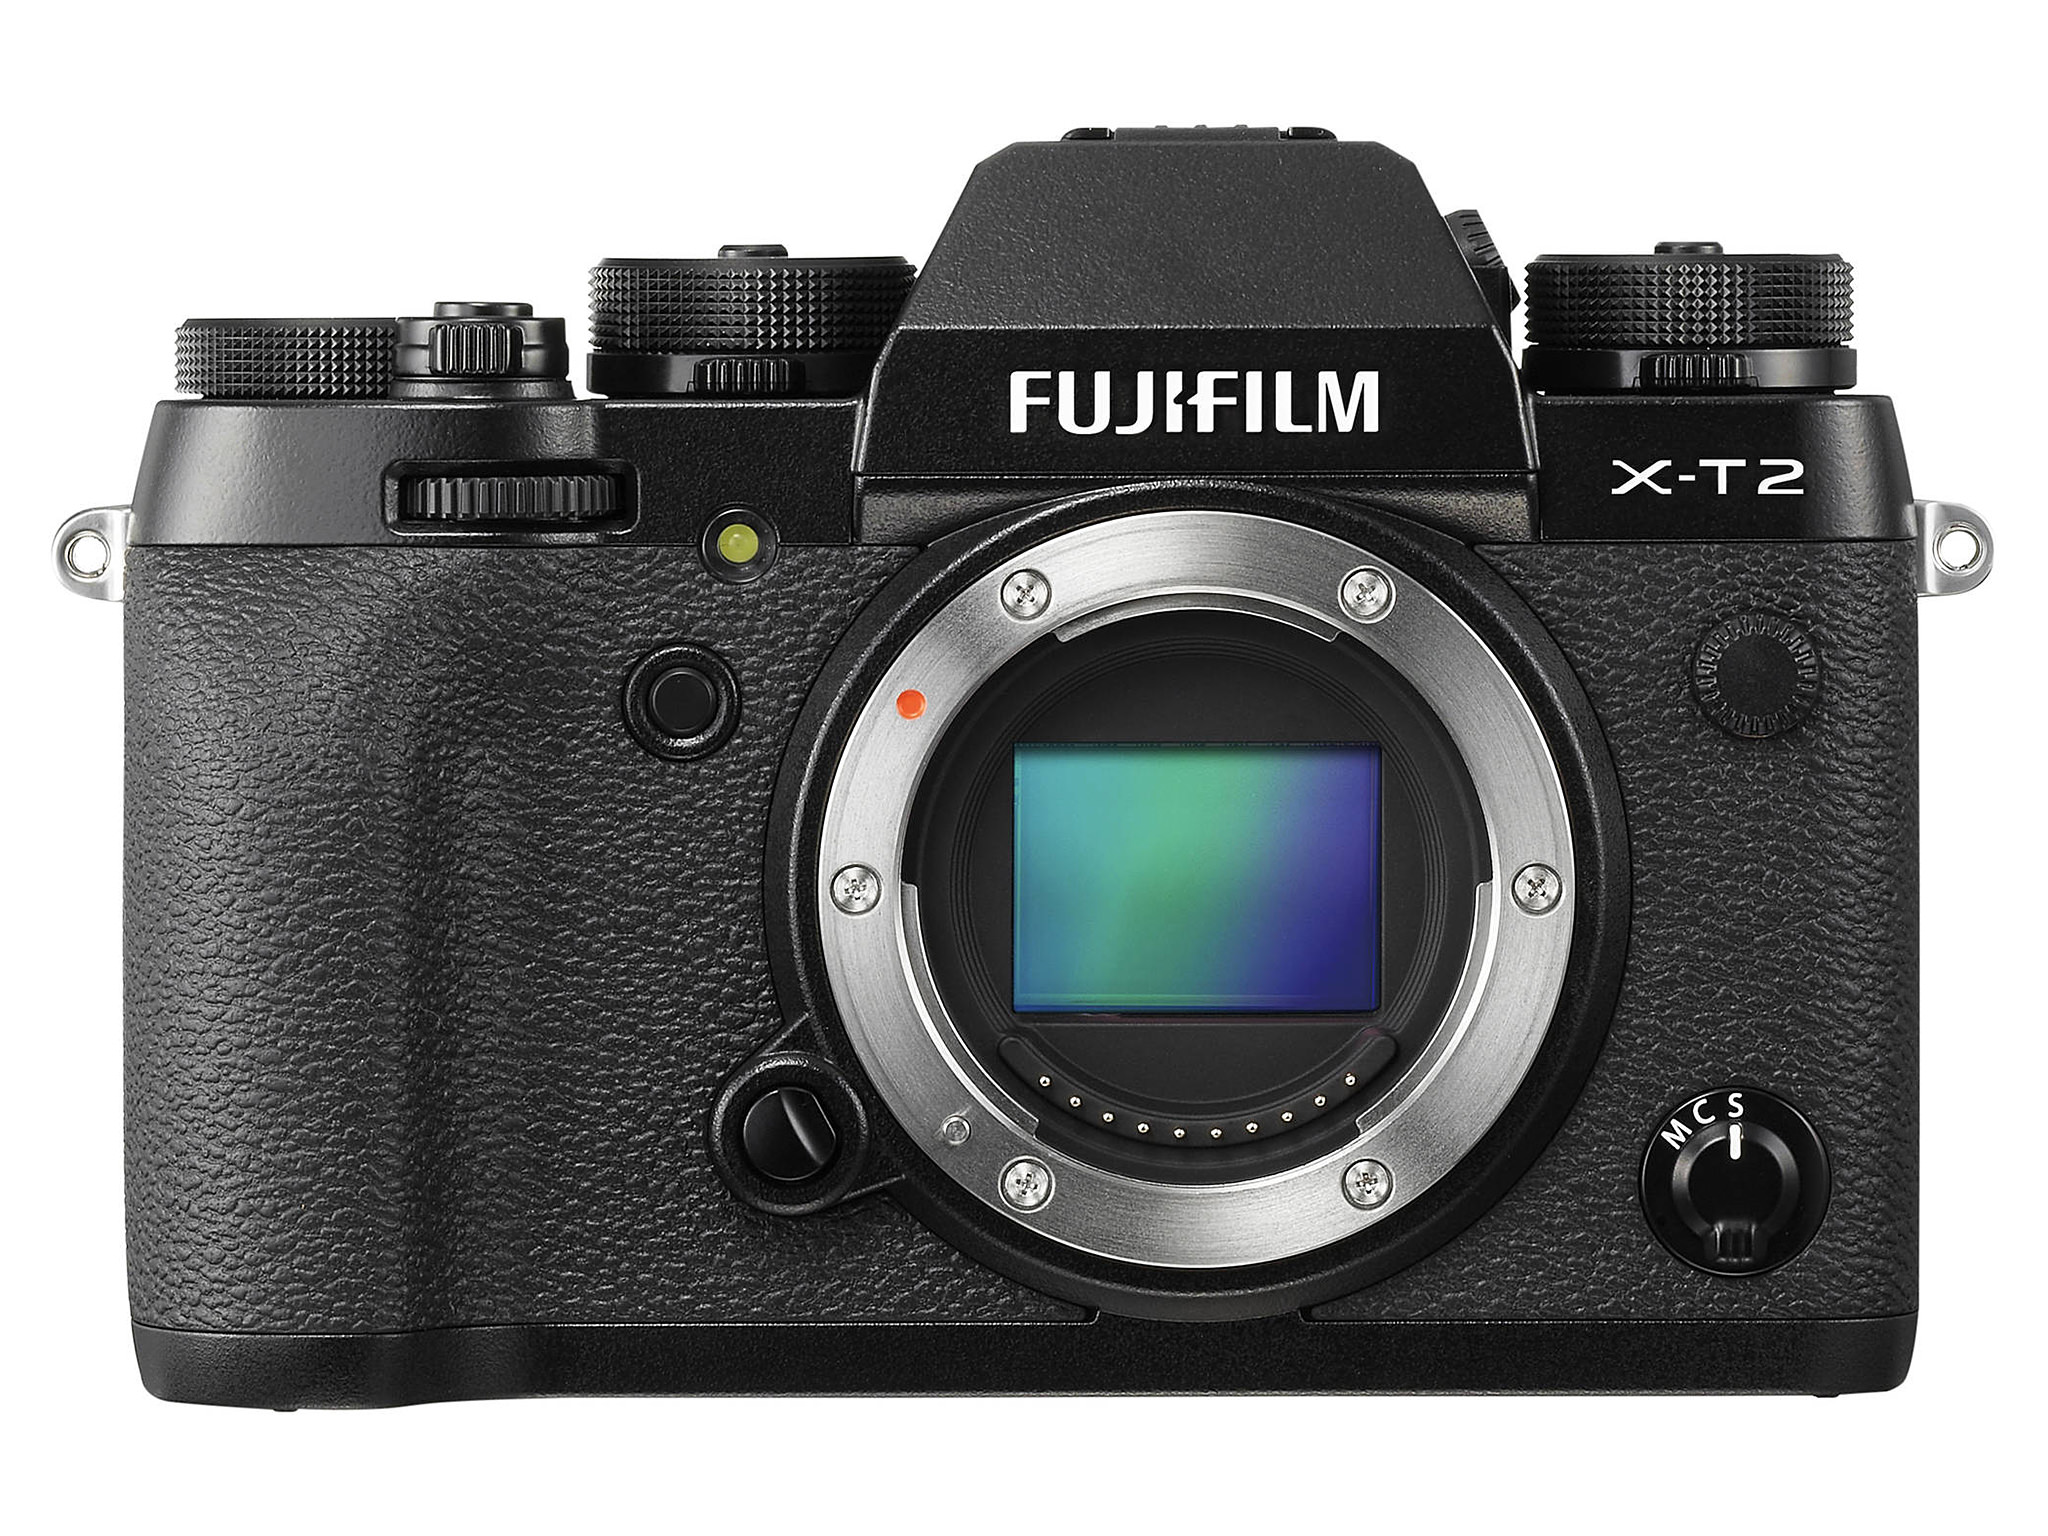 puzzel gebrek Gelijkenis Fuji X-T2 Review - Image Sensor, Metering, Lenses and Video